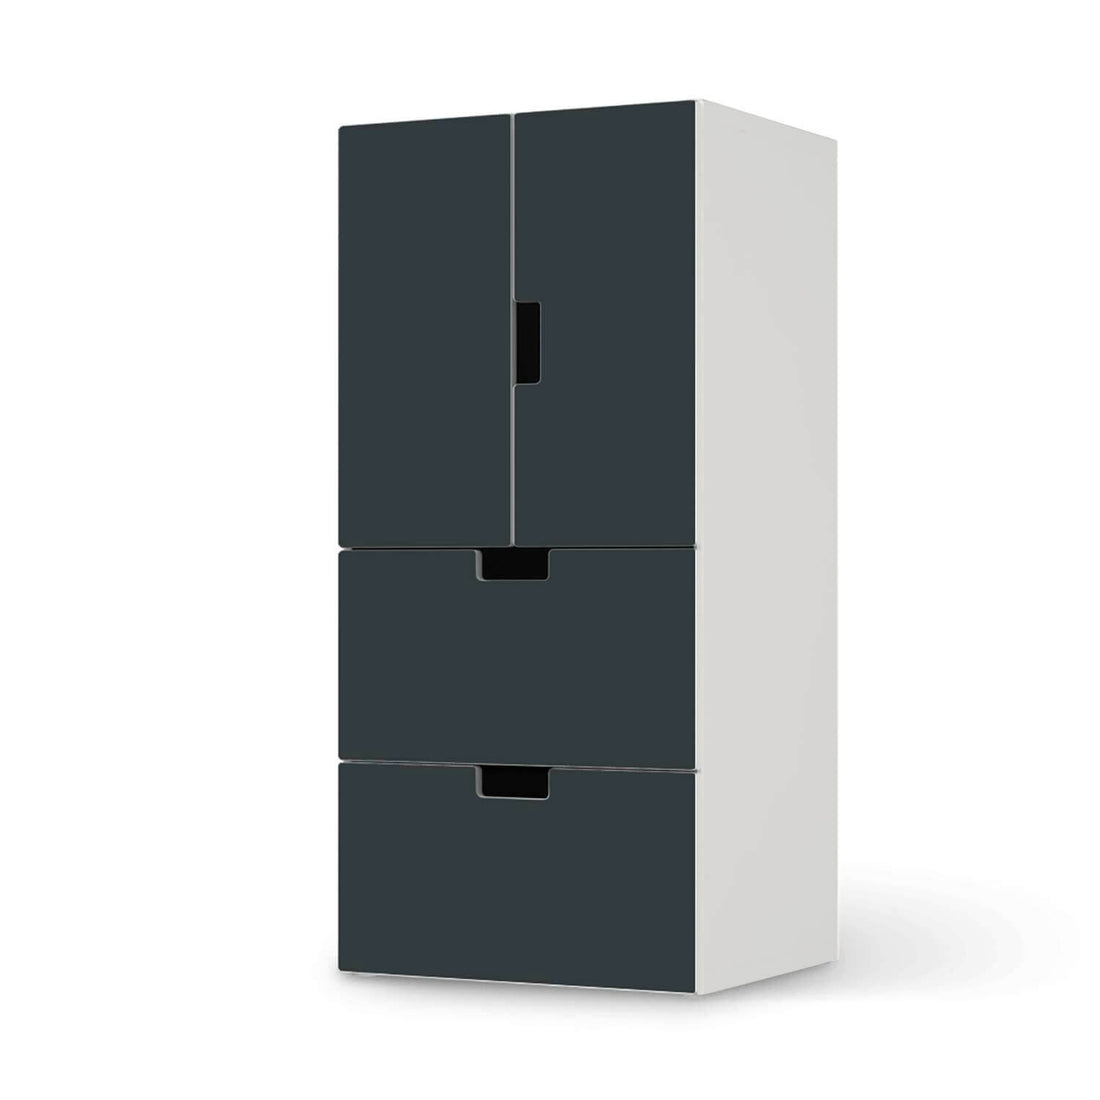 Möbelfolie Blaugrau Dark - IKEA Stuva kombiniert - 2 Schubladen und 2 kleine Türen  - weiss